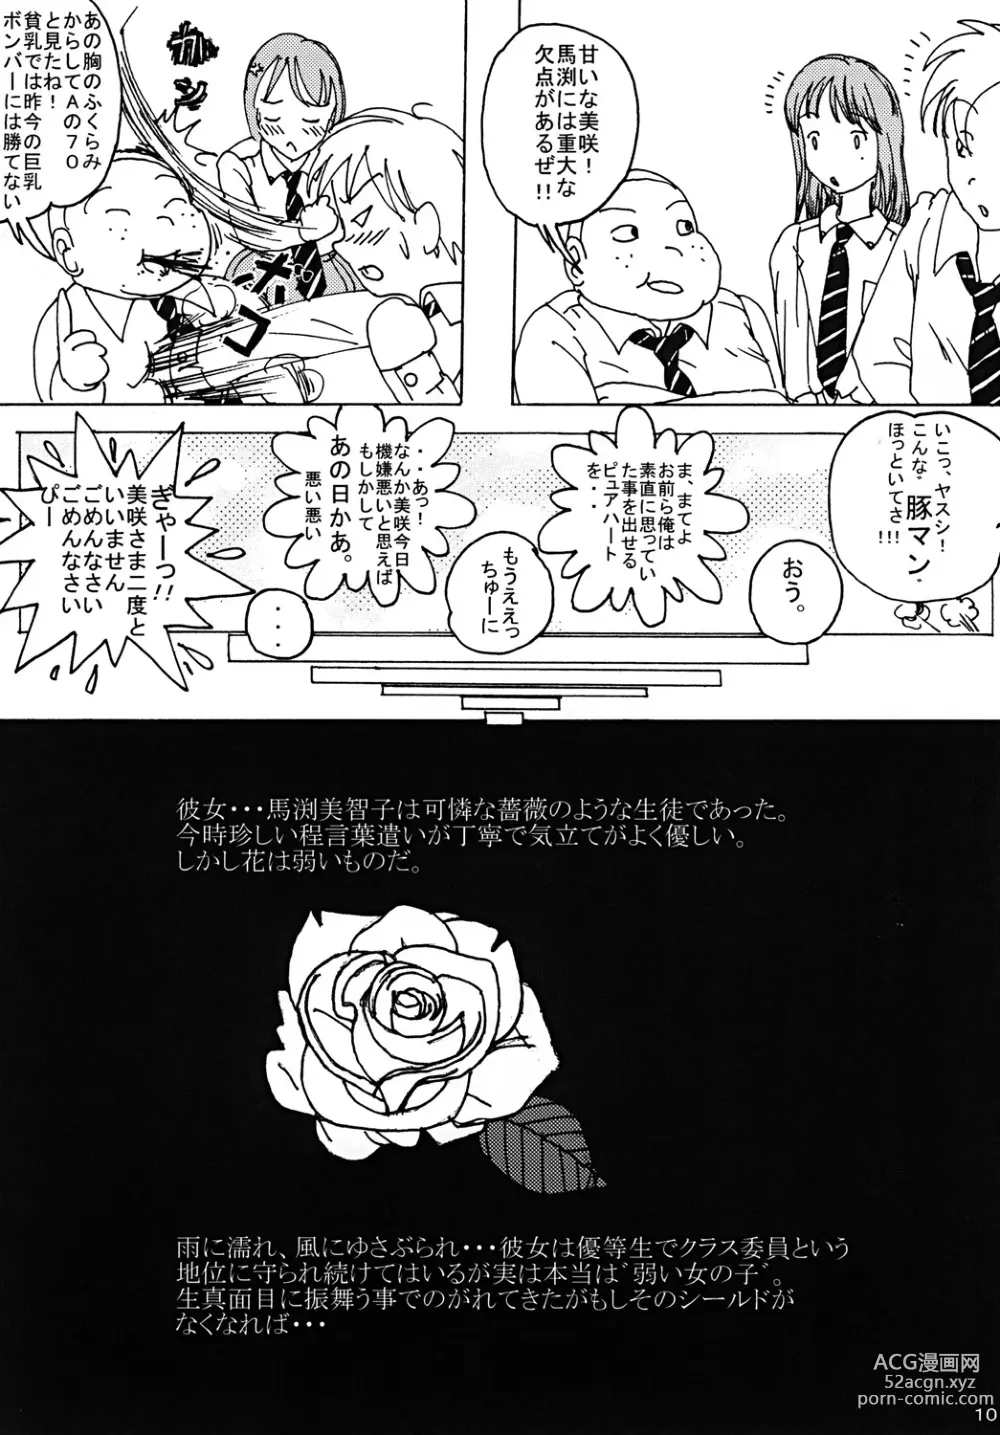 Page 9 of doujinshi Mune Ippai no Dizzy